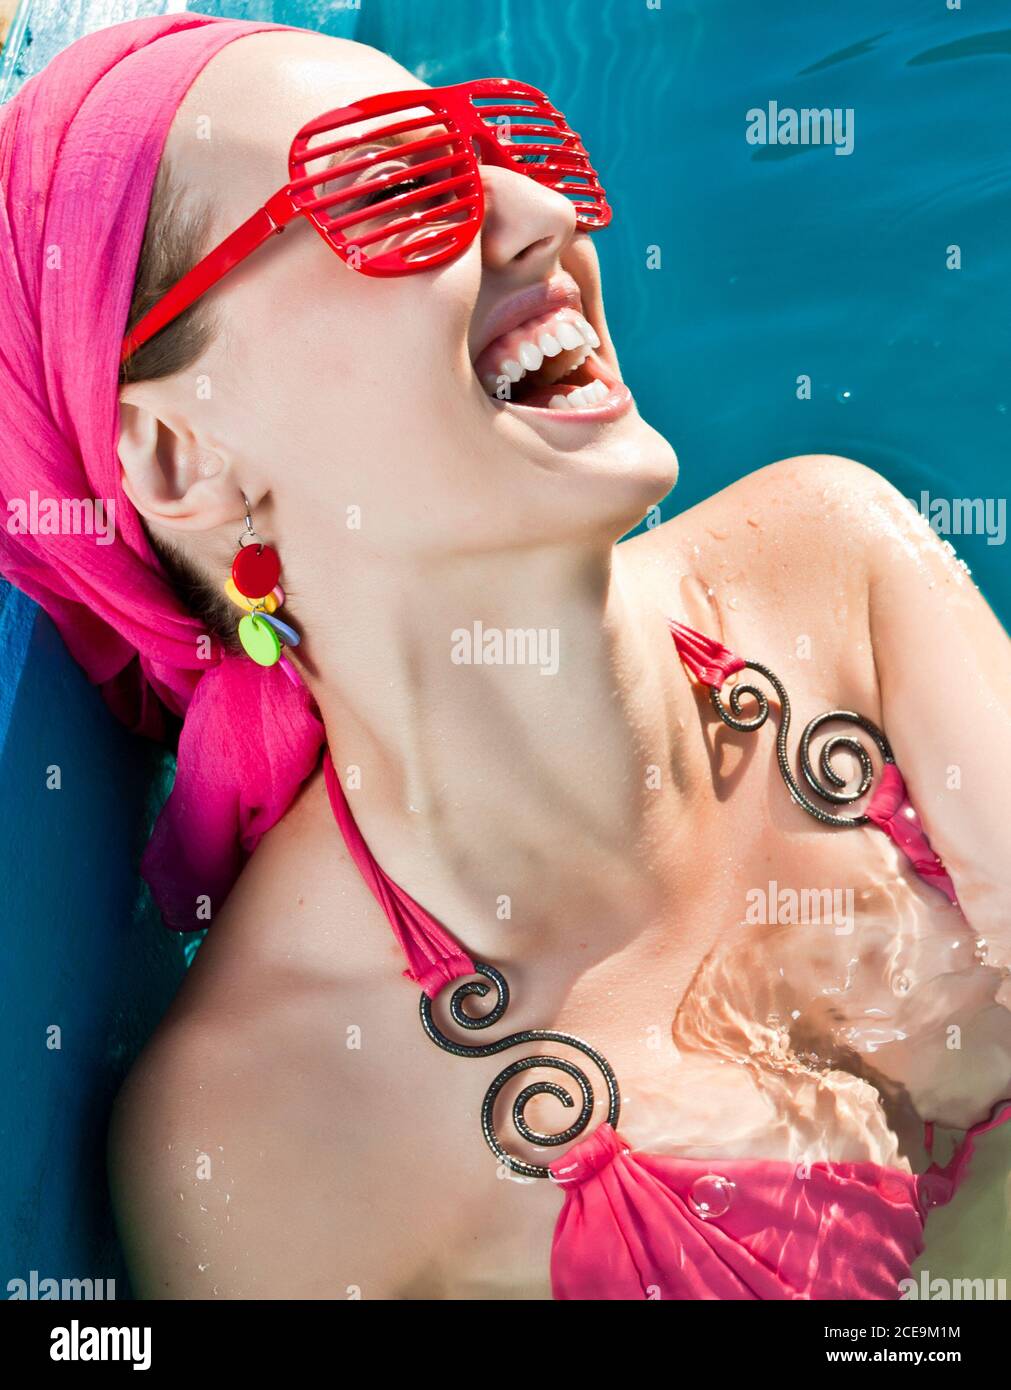 donna sorridente con occhiali da sole rossi in piscina Foto Stock